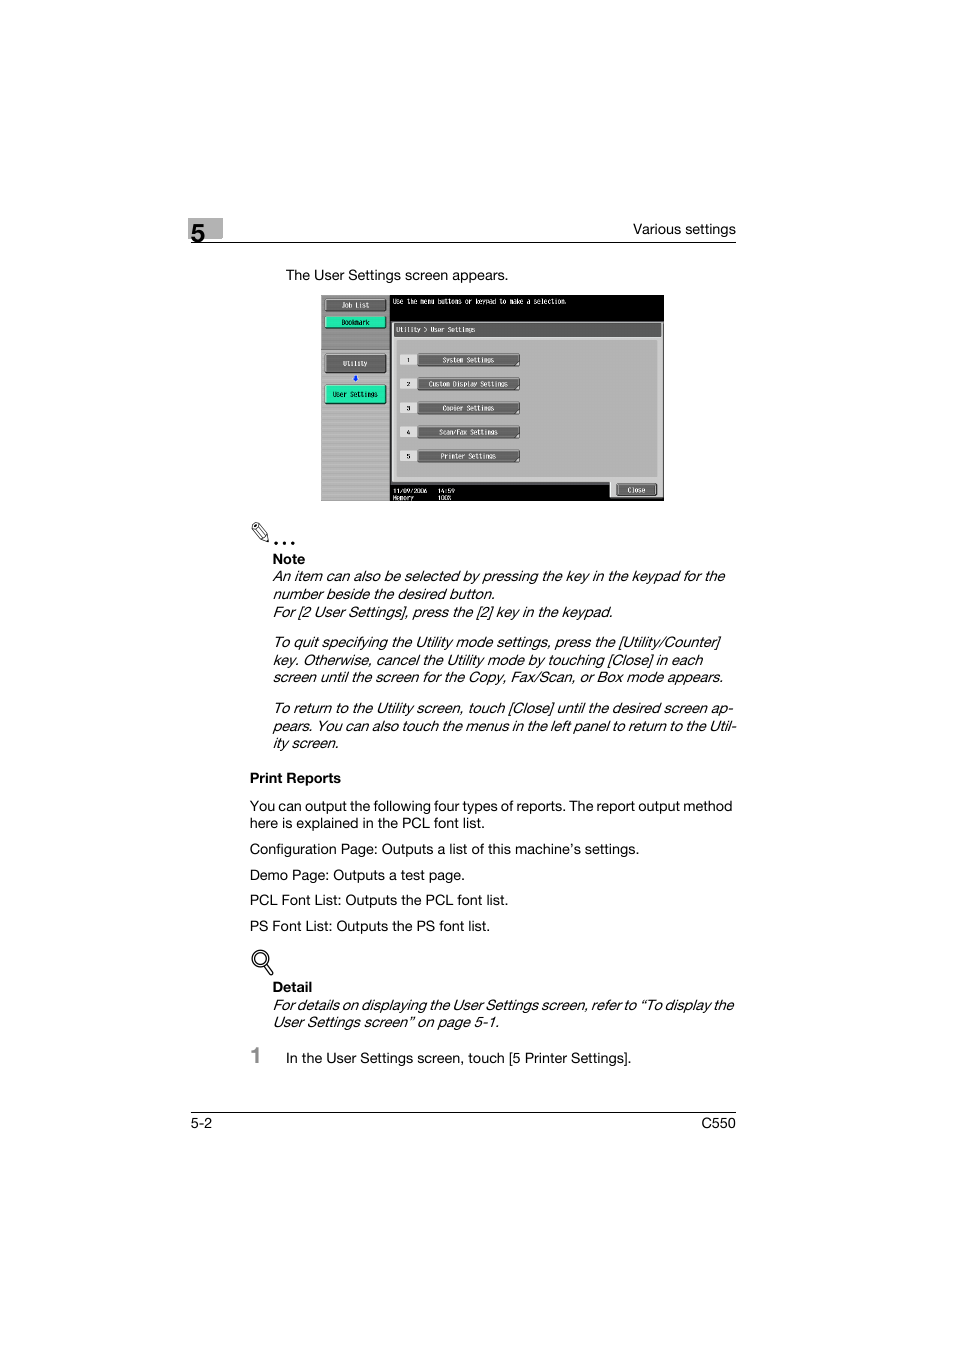 Print reports, Print reports -2 | Konica Minolta bizhub C550 User Manual | Page 87 / 102